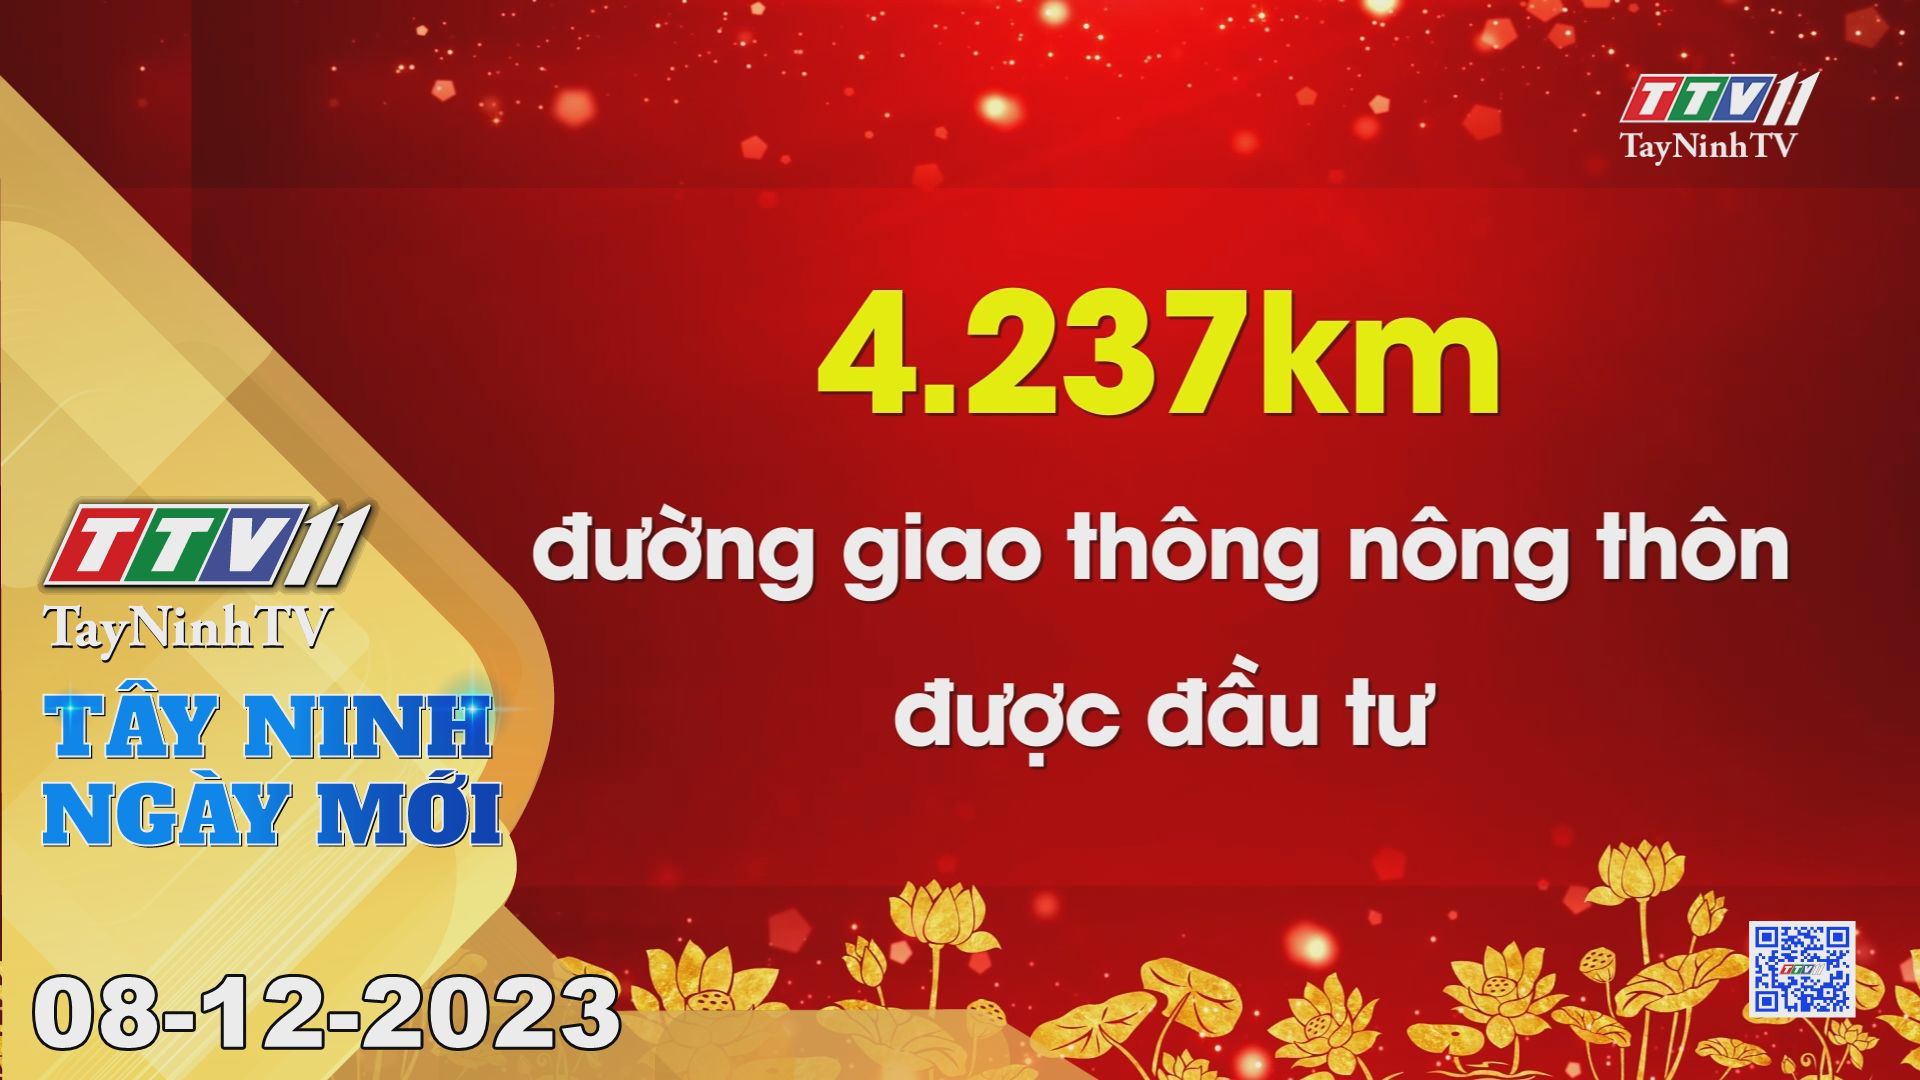 Tây Ninh ngày mới 08-12-2023 | Tin tức hôm nay | TayNinhTV